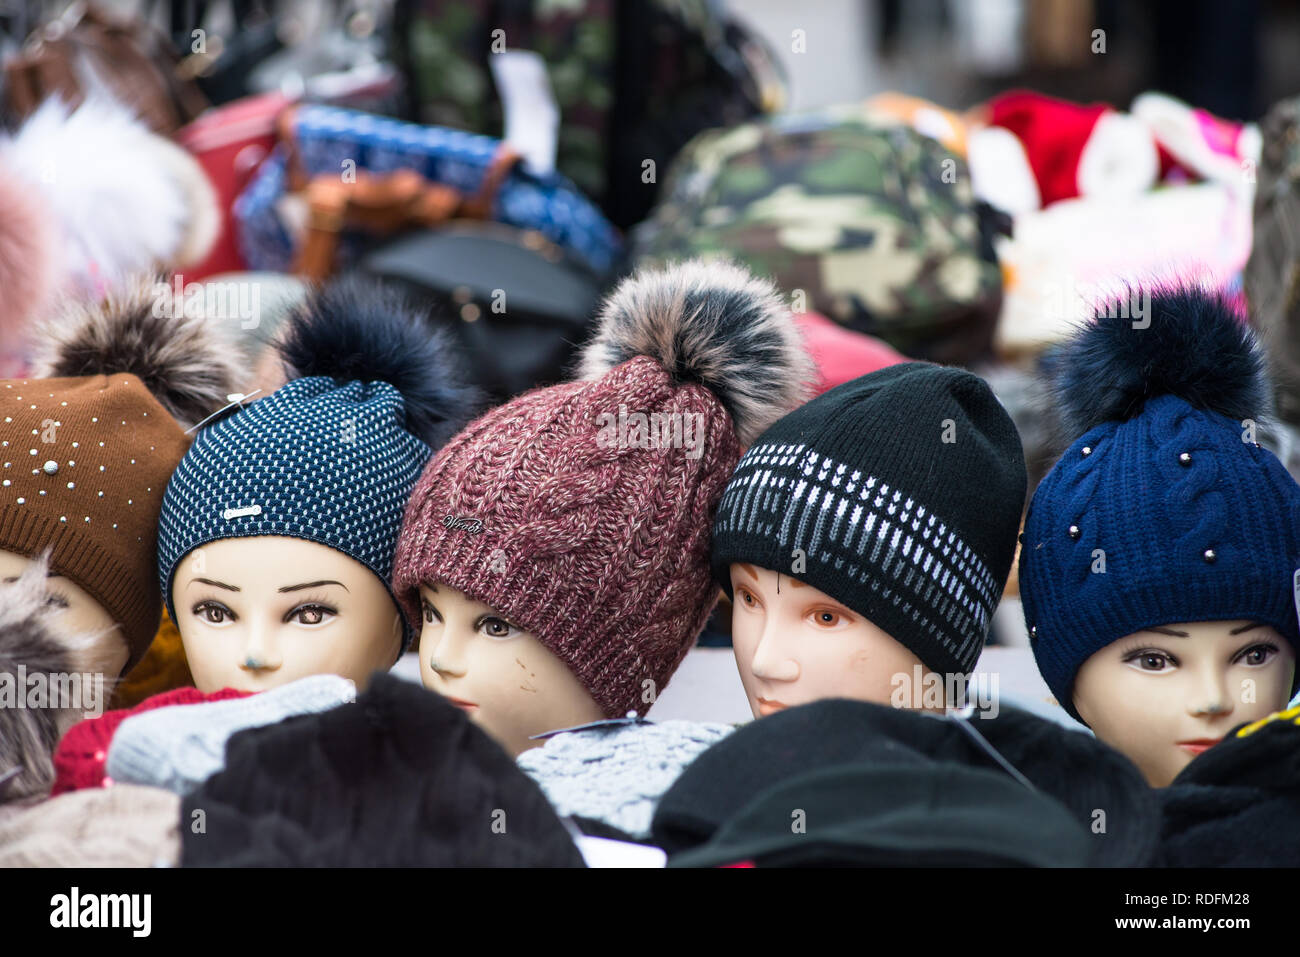 Testa di modelle con berretti di lana a Vienna Naschmarkt Linke Wienzeile mercato delle pulci Mercato antiquario. Austria. Foto Stock